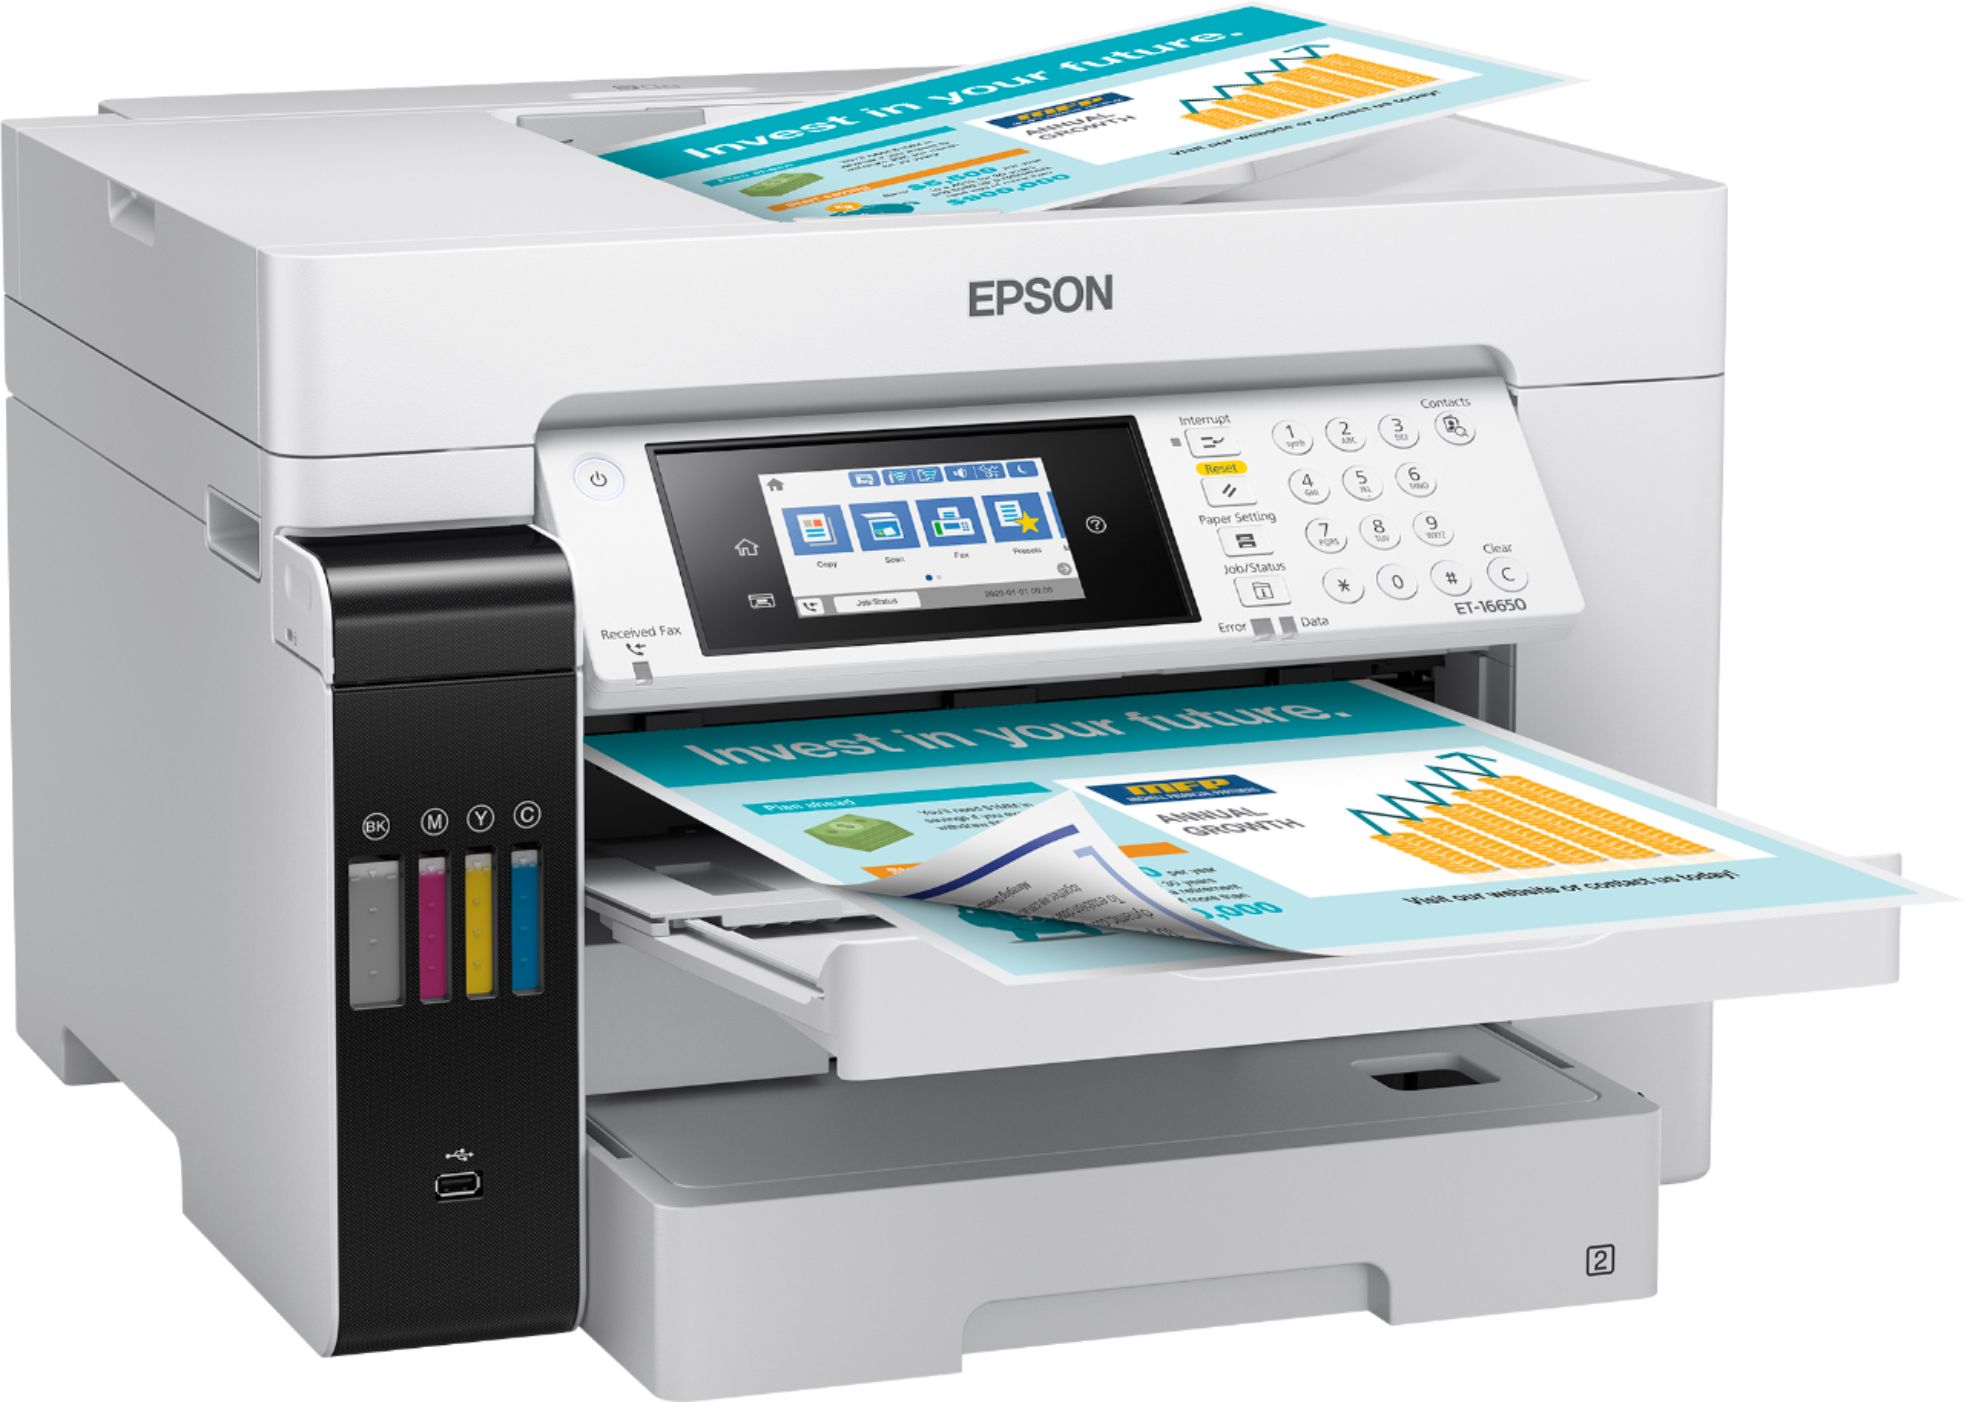 Epson EcoTank Pro ET-16650 Impresora inalámbrica de gran formato a color  todo en uno Supertank con escáner, copiadora, fax y Ethernet, color blanco